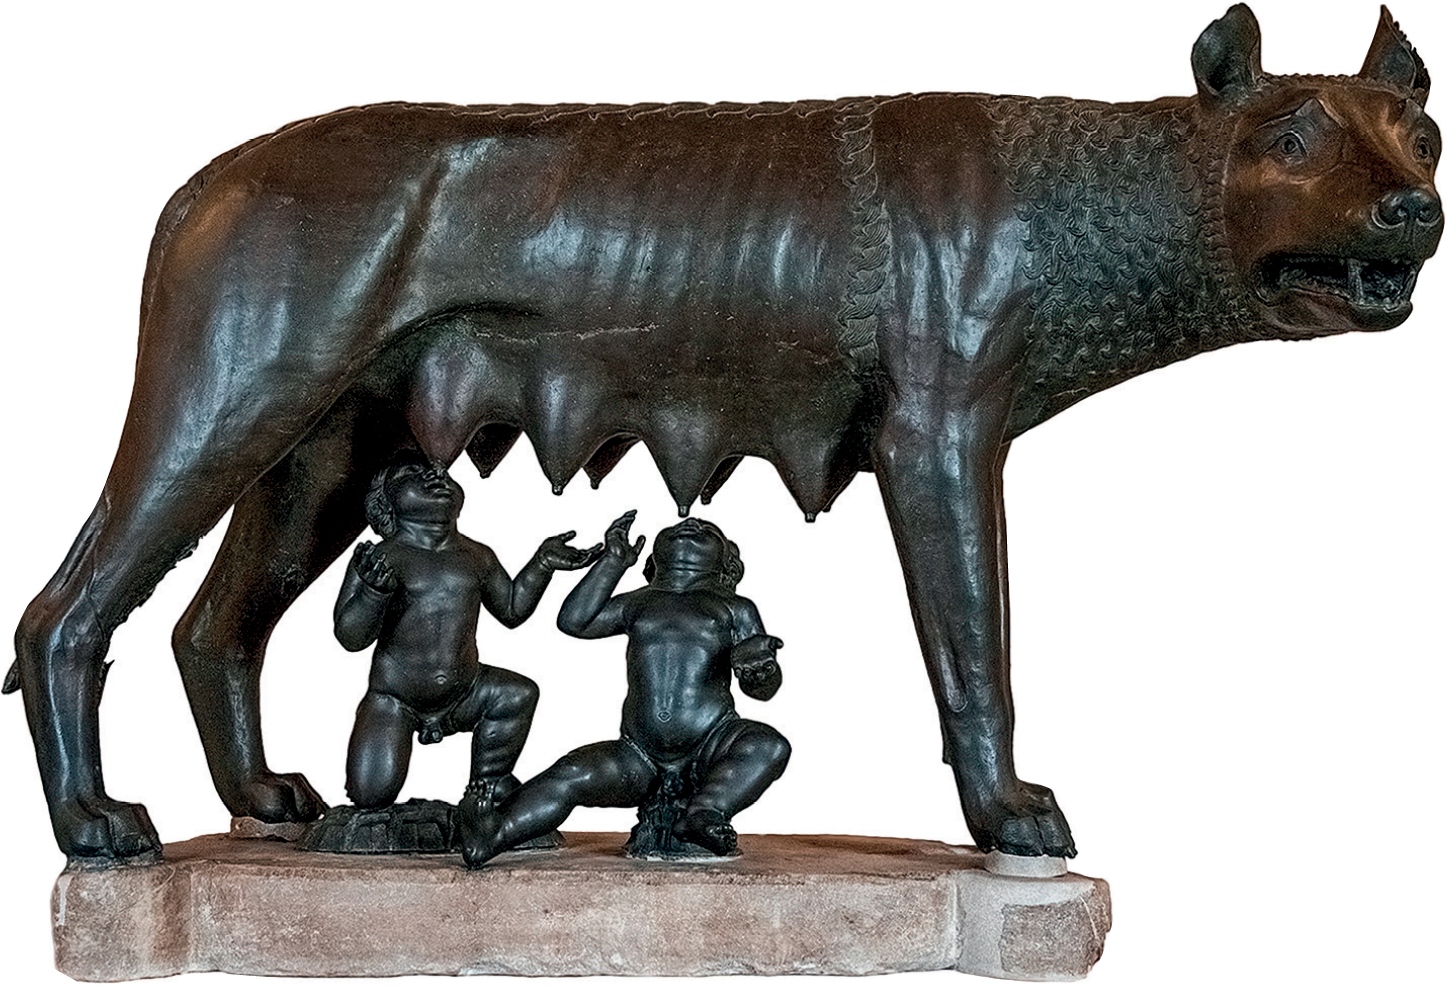 Fotografia. Escultura de cor escura representando uma loba com as tetas fartas, amamentando duas crianças humanas sentadas debaixo dela.